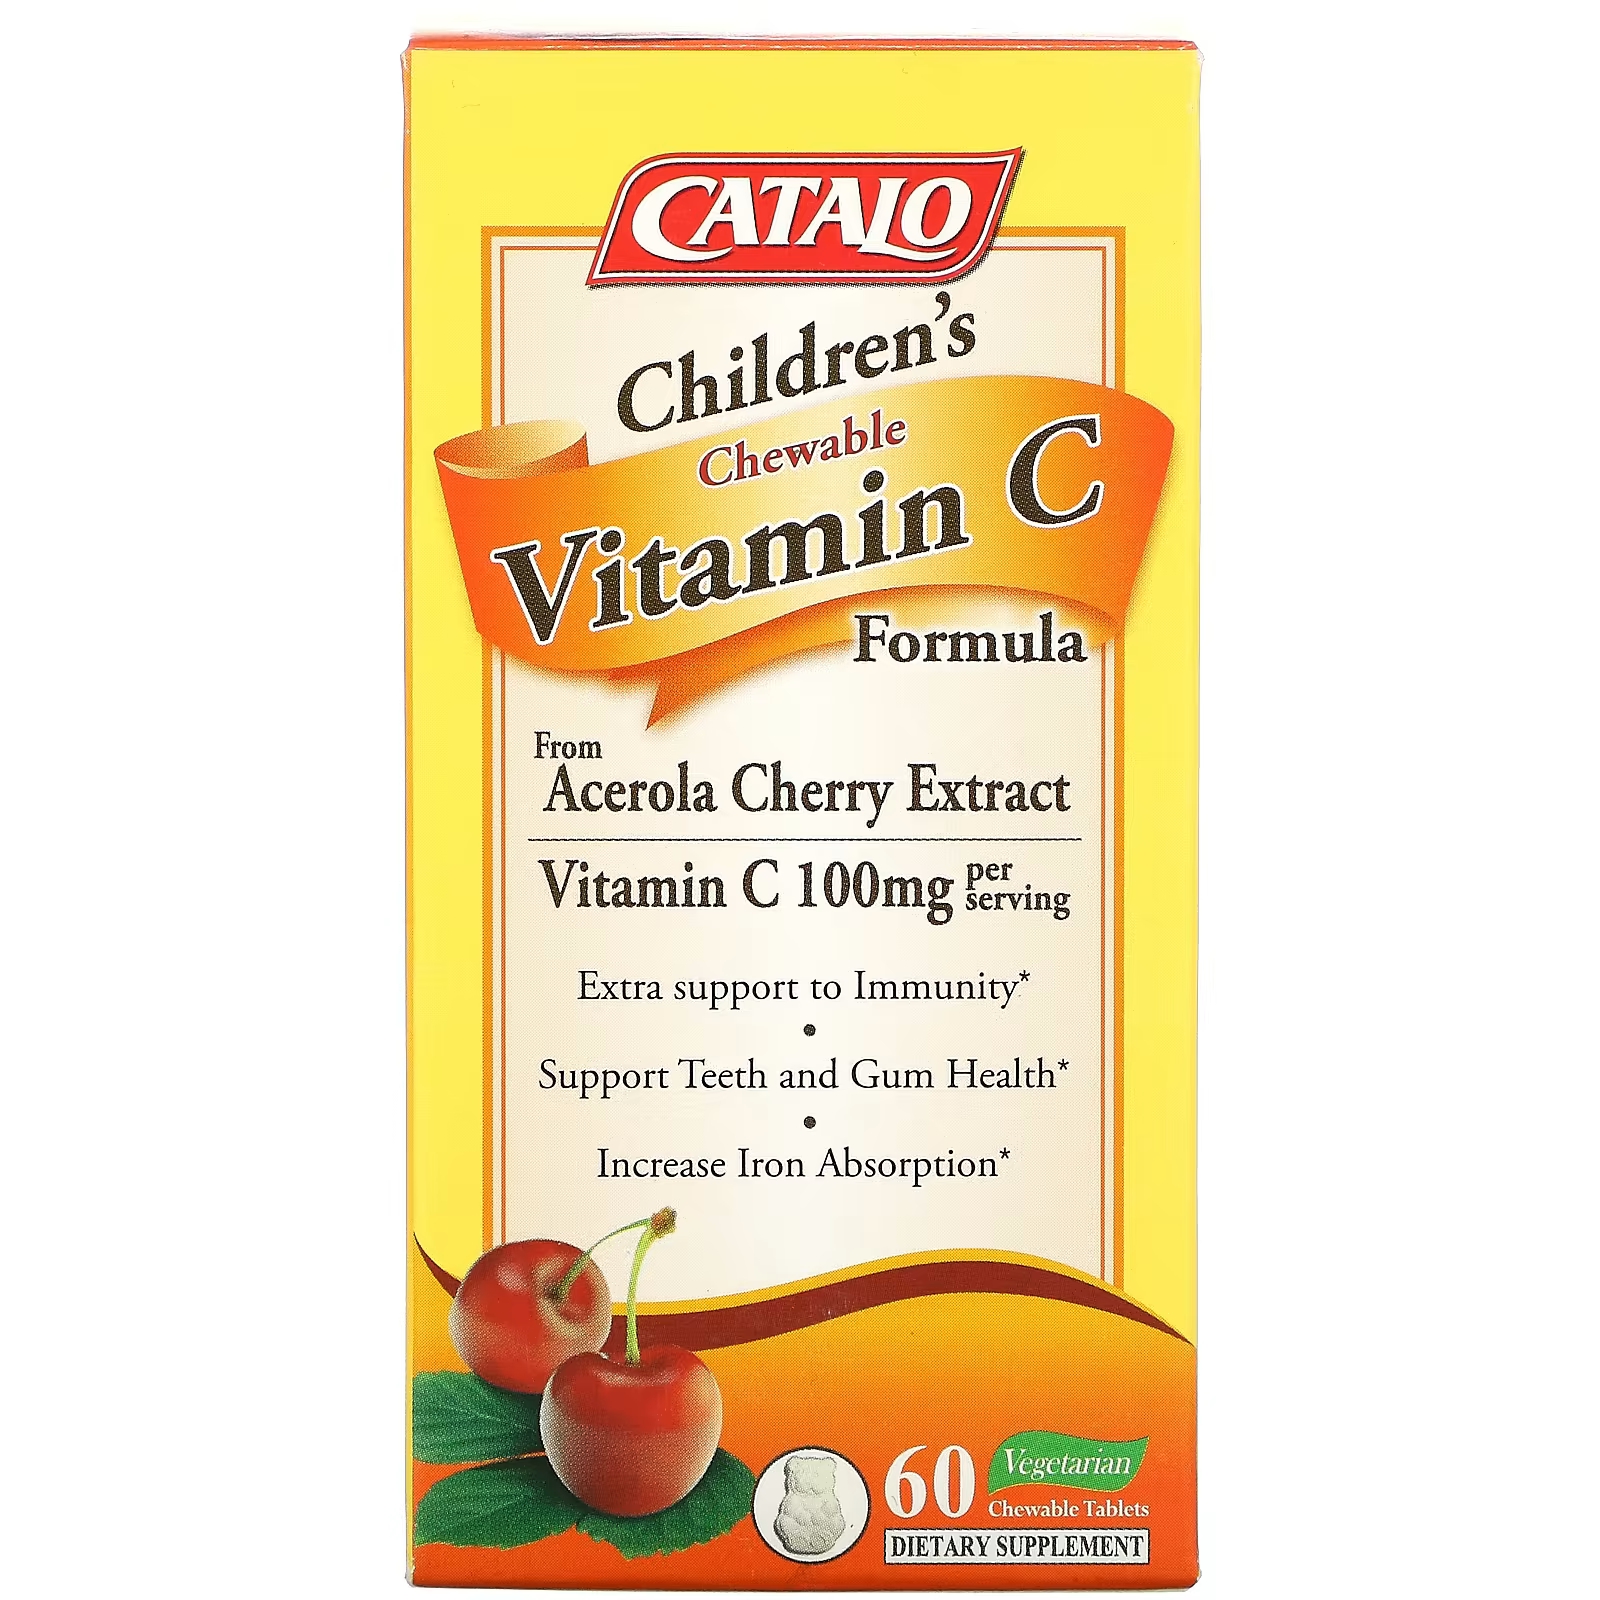 Пищевая добавка с витамином C для детей Catalo Naturals 100 мг, 60 таблеток (50 мг в одной таблетке) catalo naturals формула с витамином c для детей 50 мг 60 вегетарианских жевательных таблеток